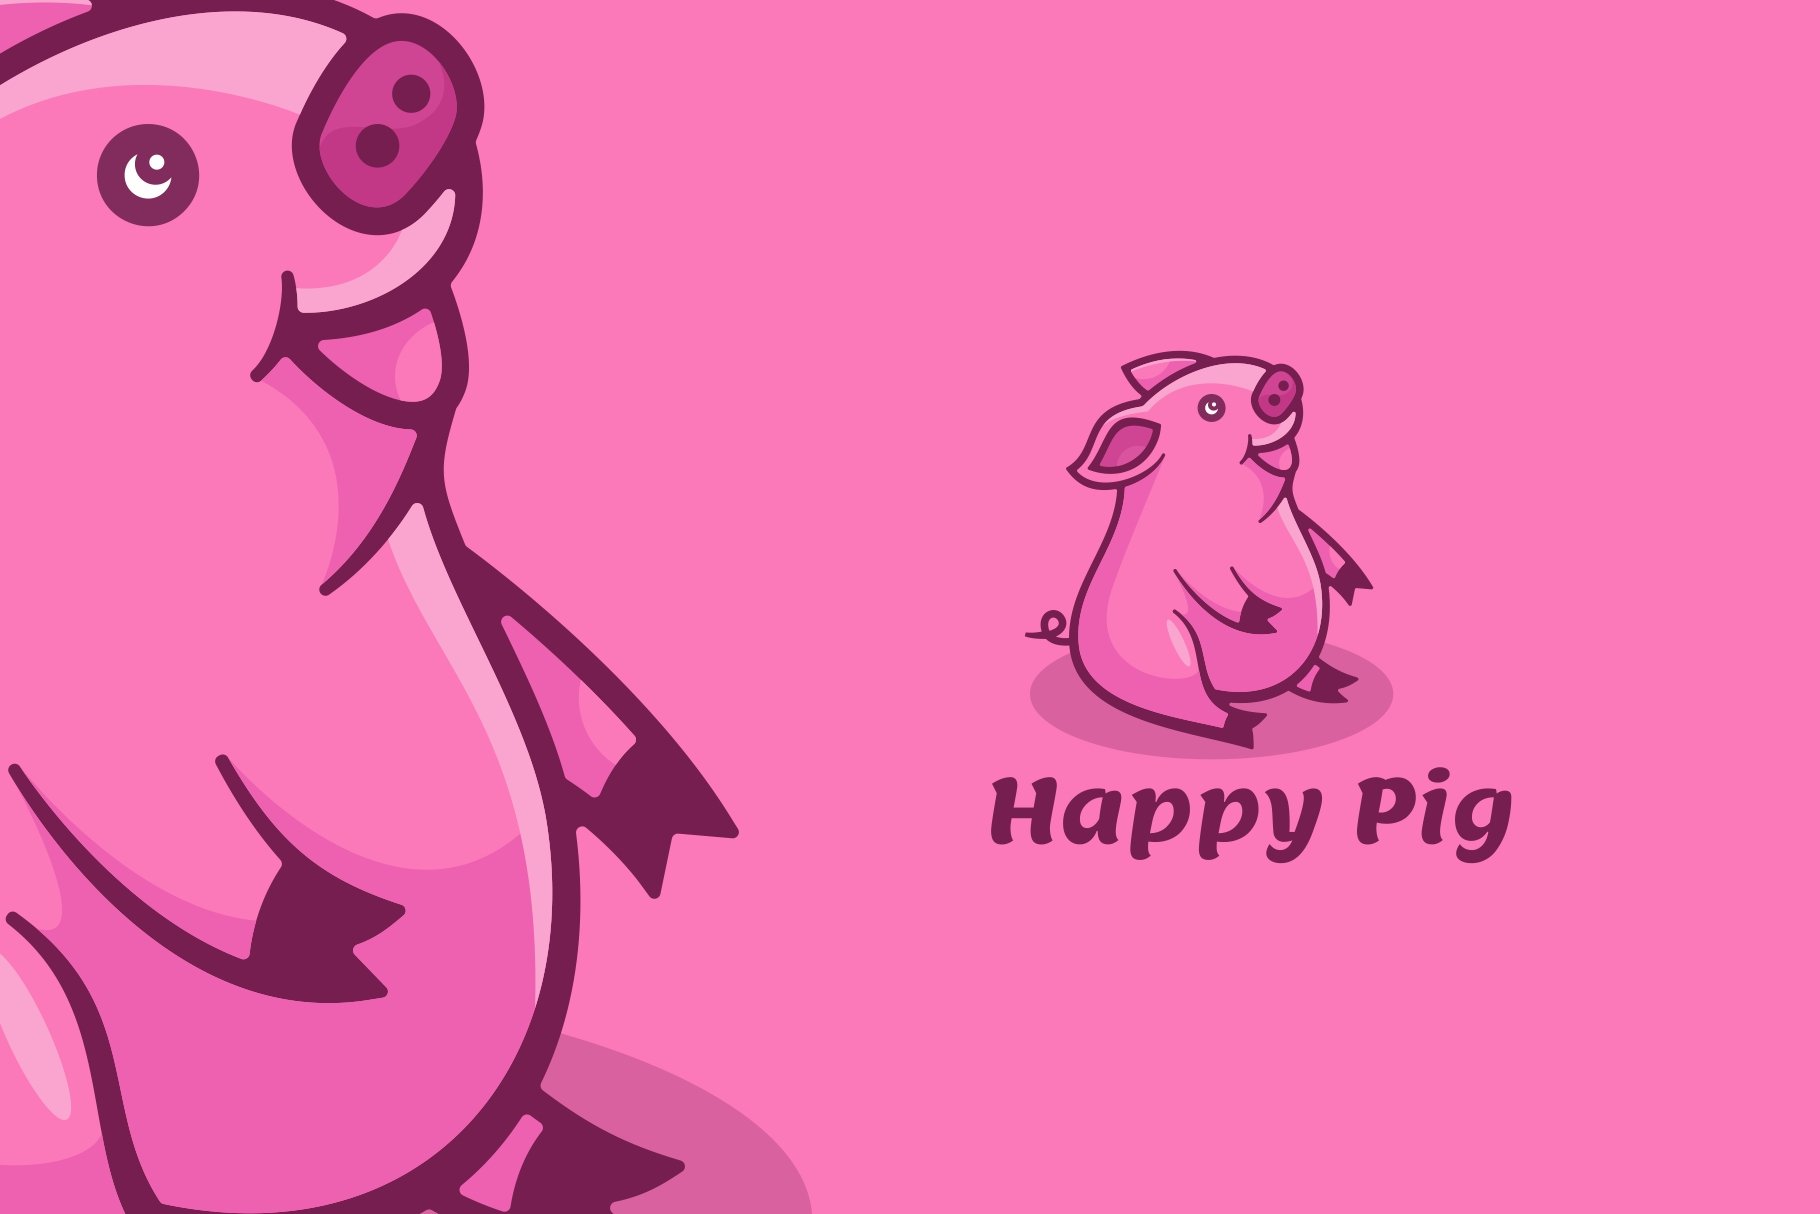 Pig Cartoon Logo cover image.